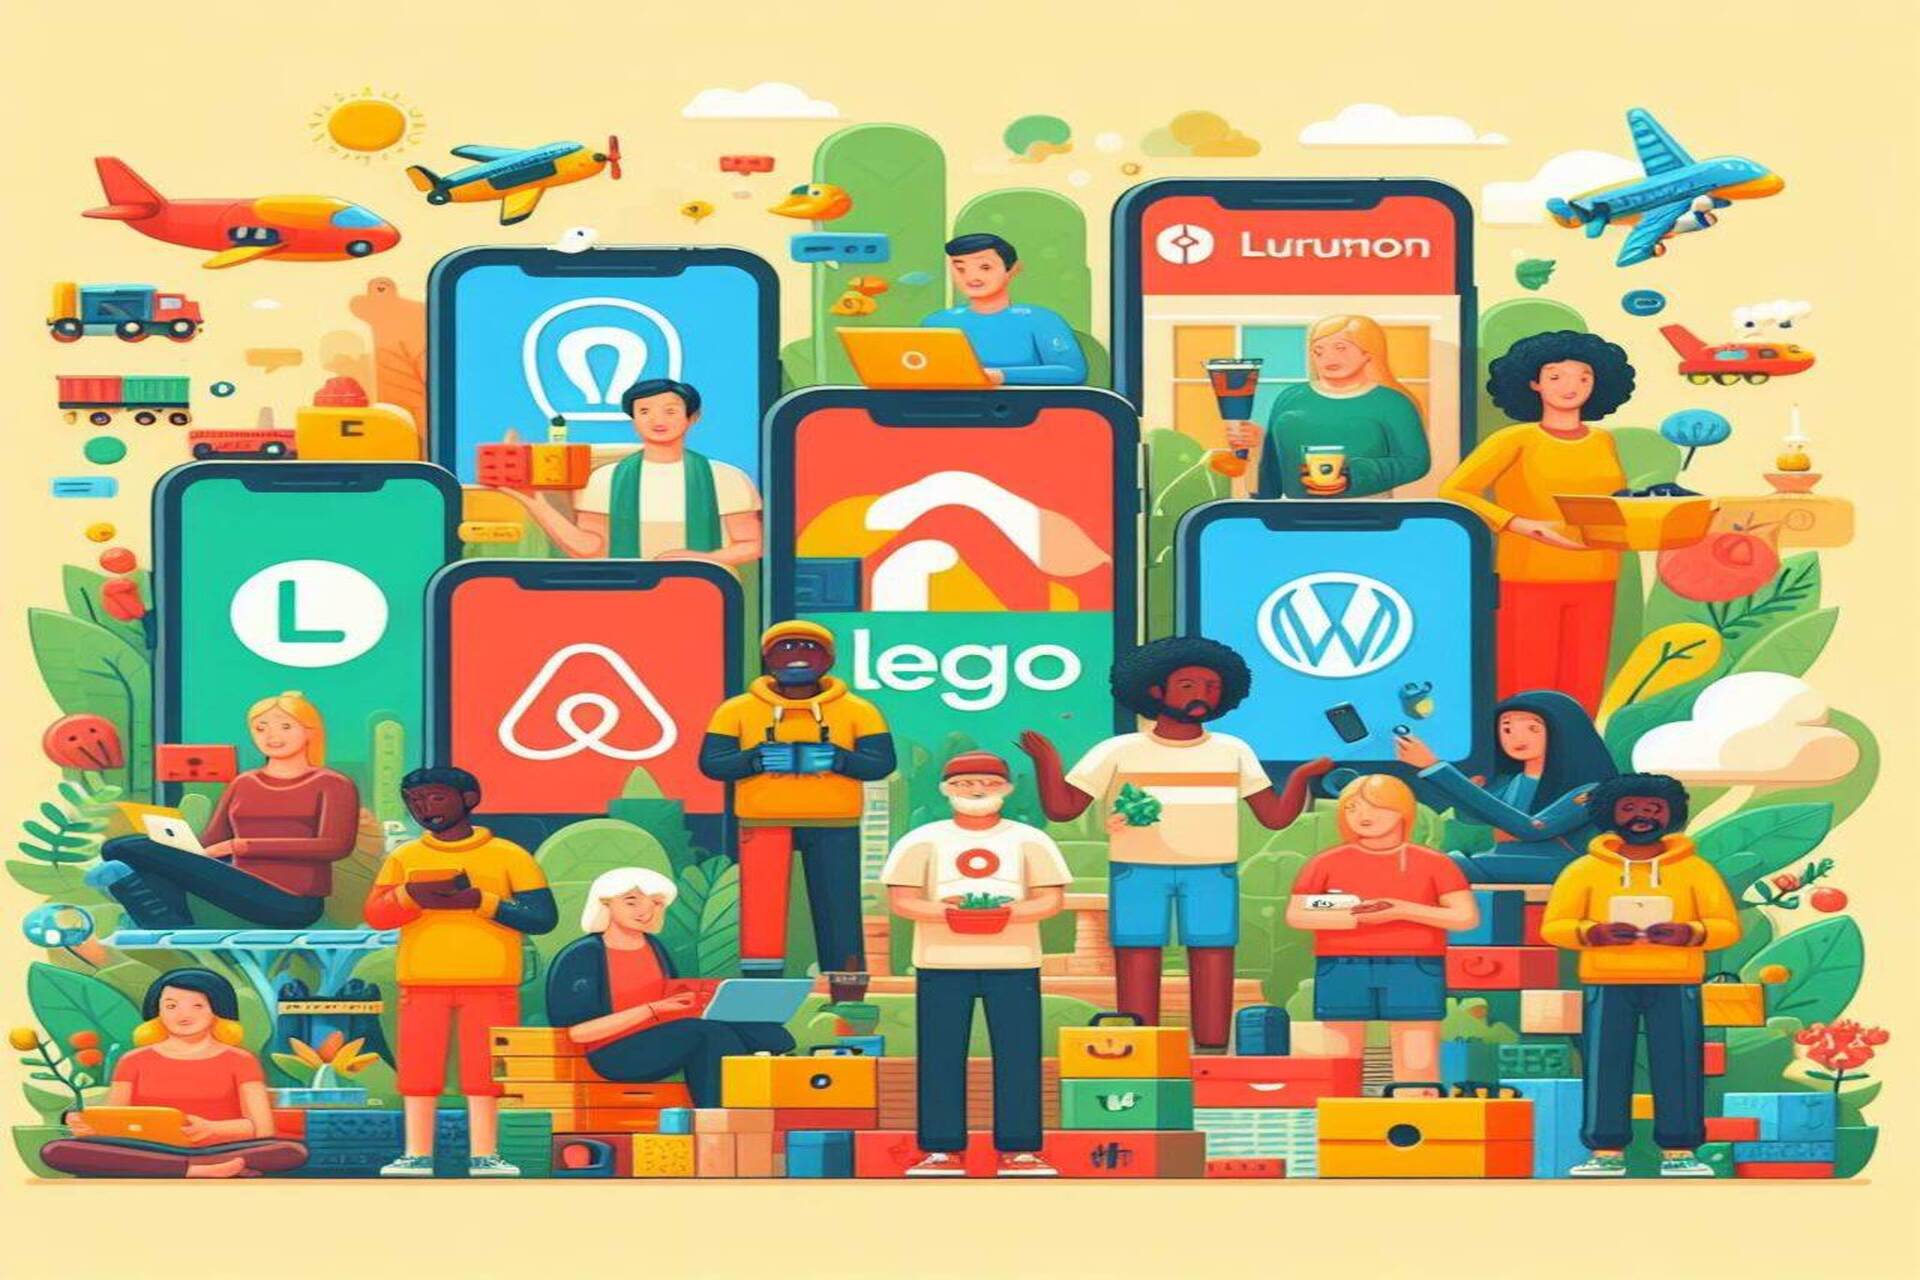 İcma və İzdiham: Airbnb, Etsy, GitHub, Stack Overflow, Lego Ideas, WordPress, Linux və Lululemon “icma” proqramlarının mükəmməl nümunələridir.